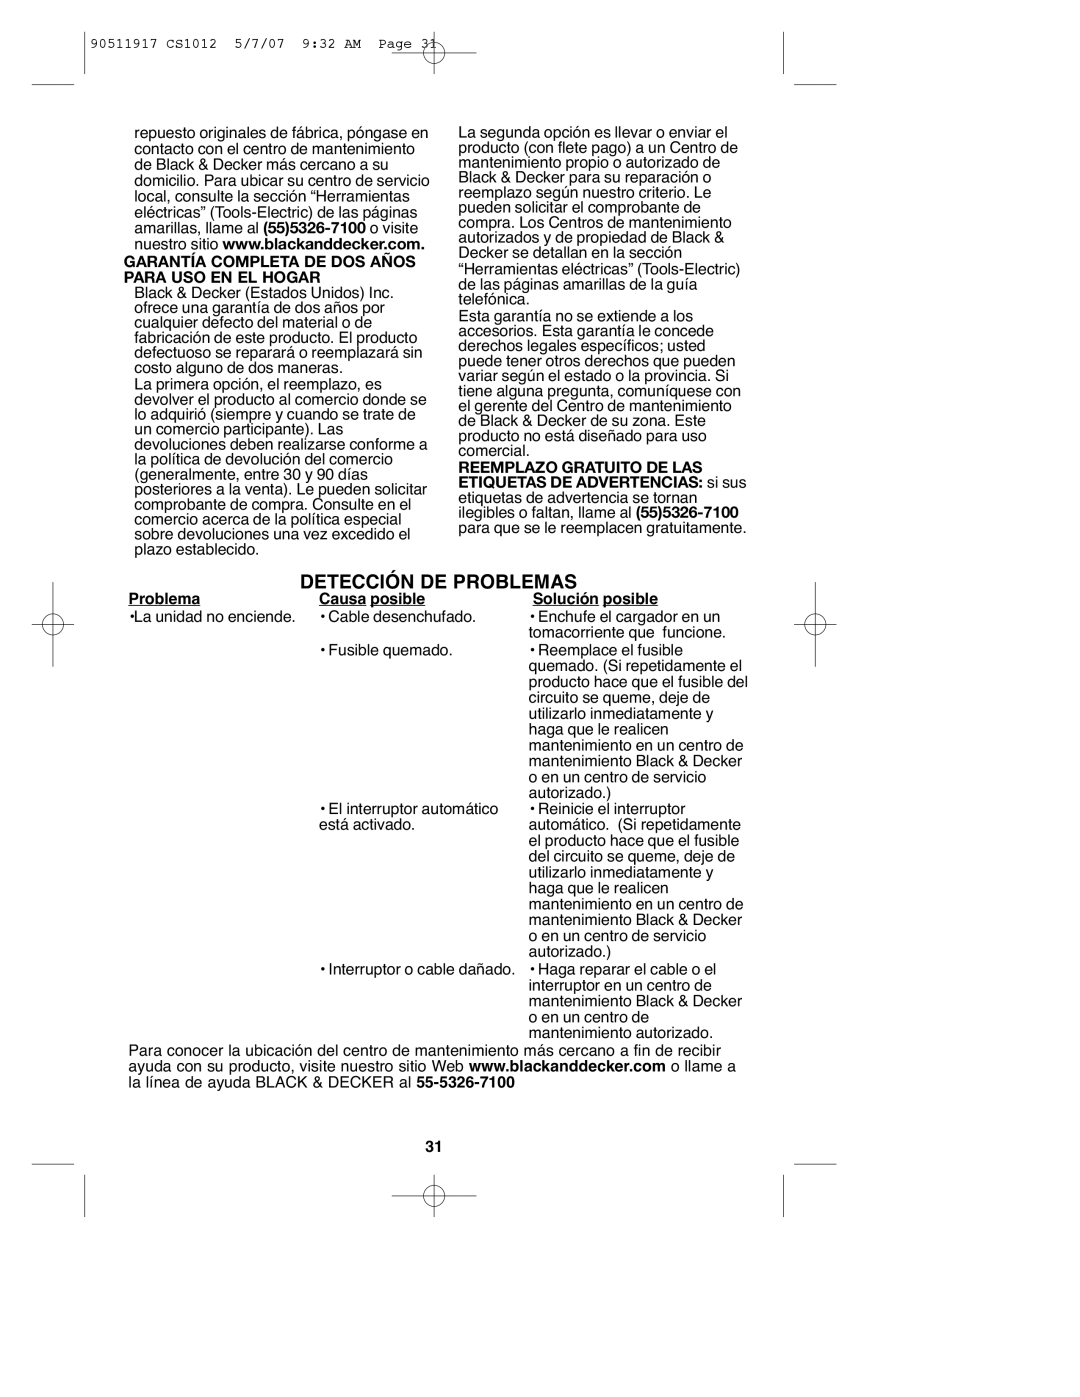 Black & Decker CS1012 instruction manual Garantía Completa DE DOS Años Para USO EN EL Hogar 